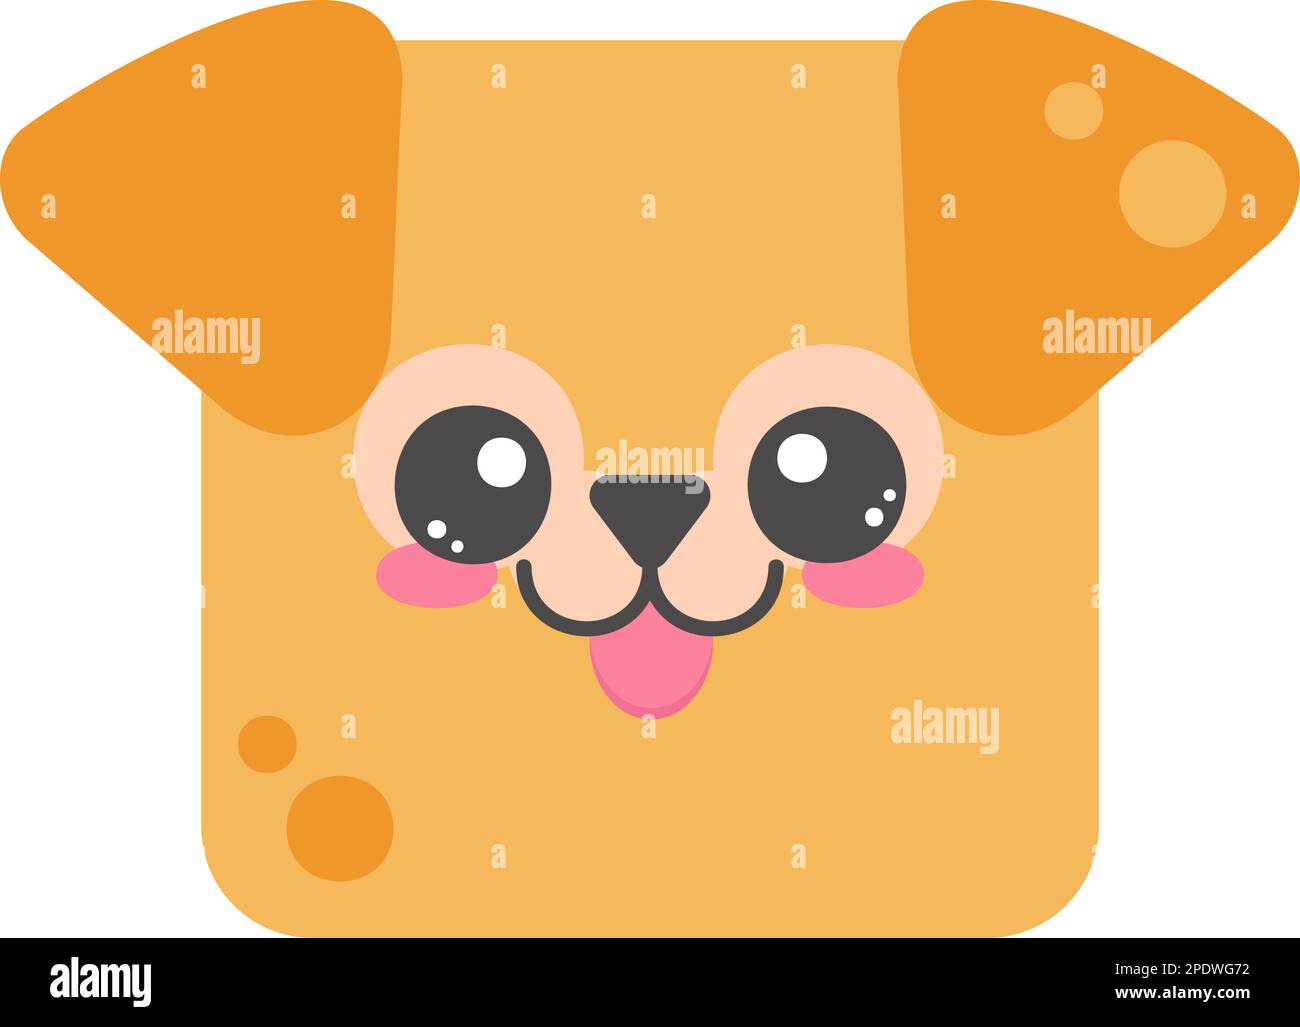 Süßes Hundegesicht. Cartoom-Kopf der Tierfigur. Minimalistisches, einfaches Design. Vektor-Welpen-Illustration Stock Vektor